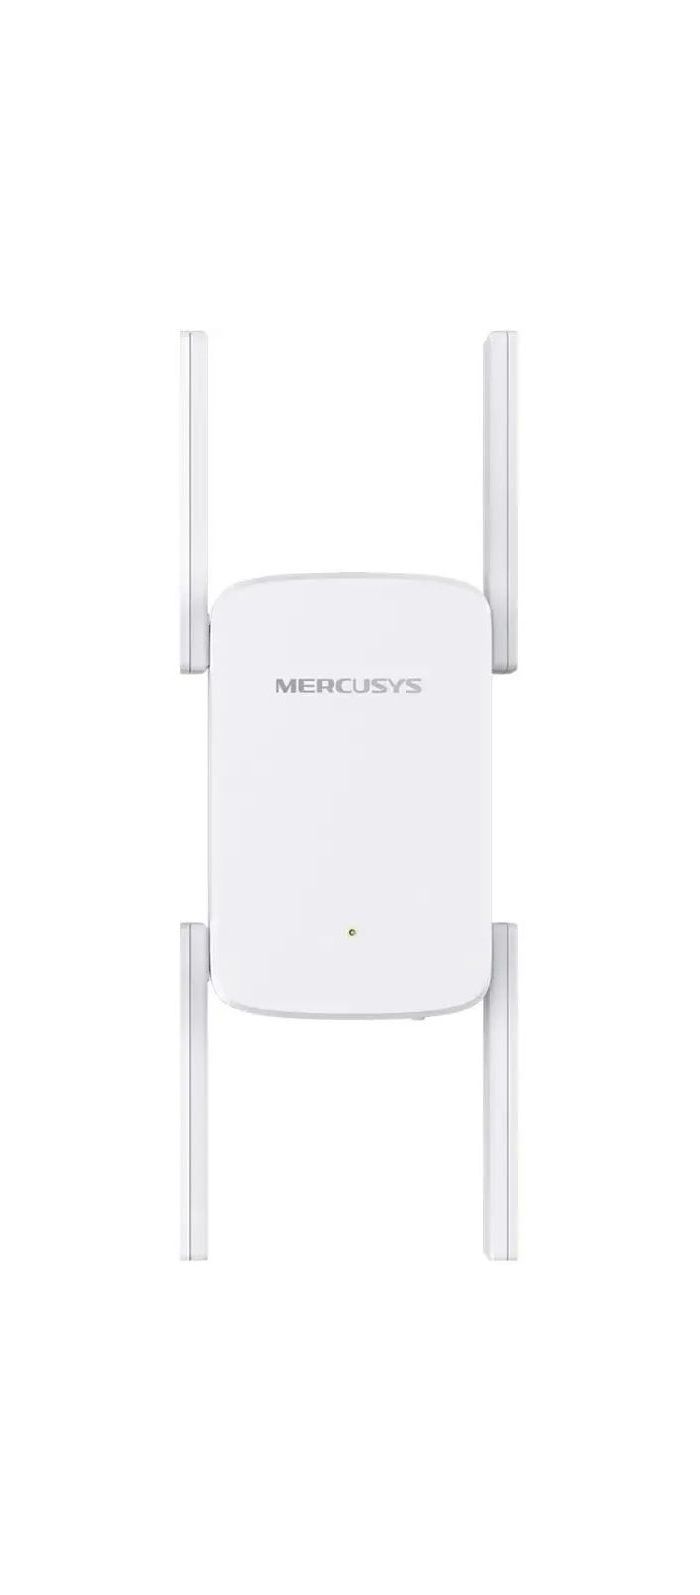 Усилитель Wi-Fi сигнала Mercusys ME50G цена и фото